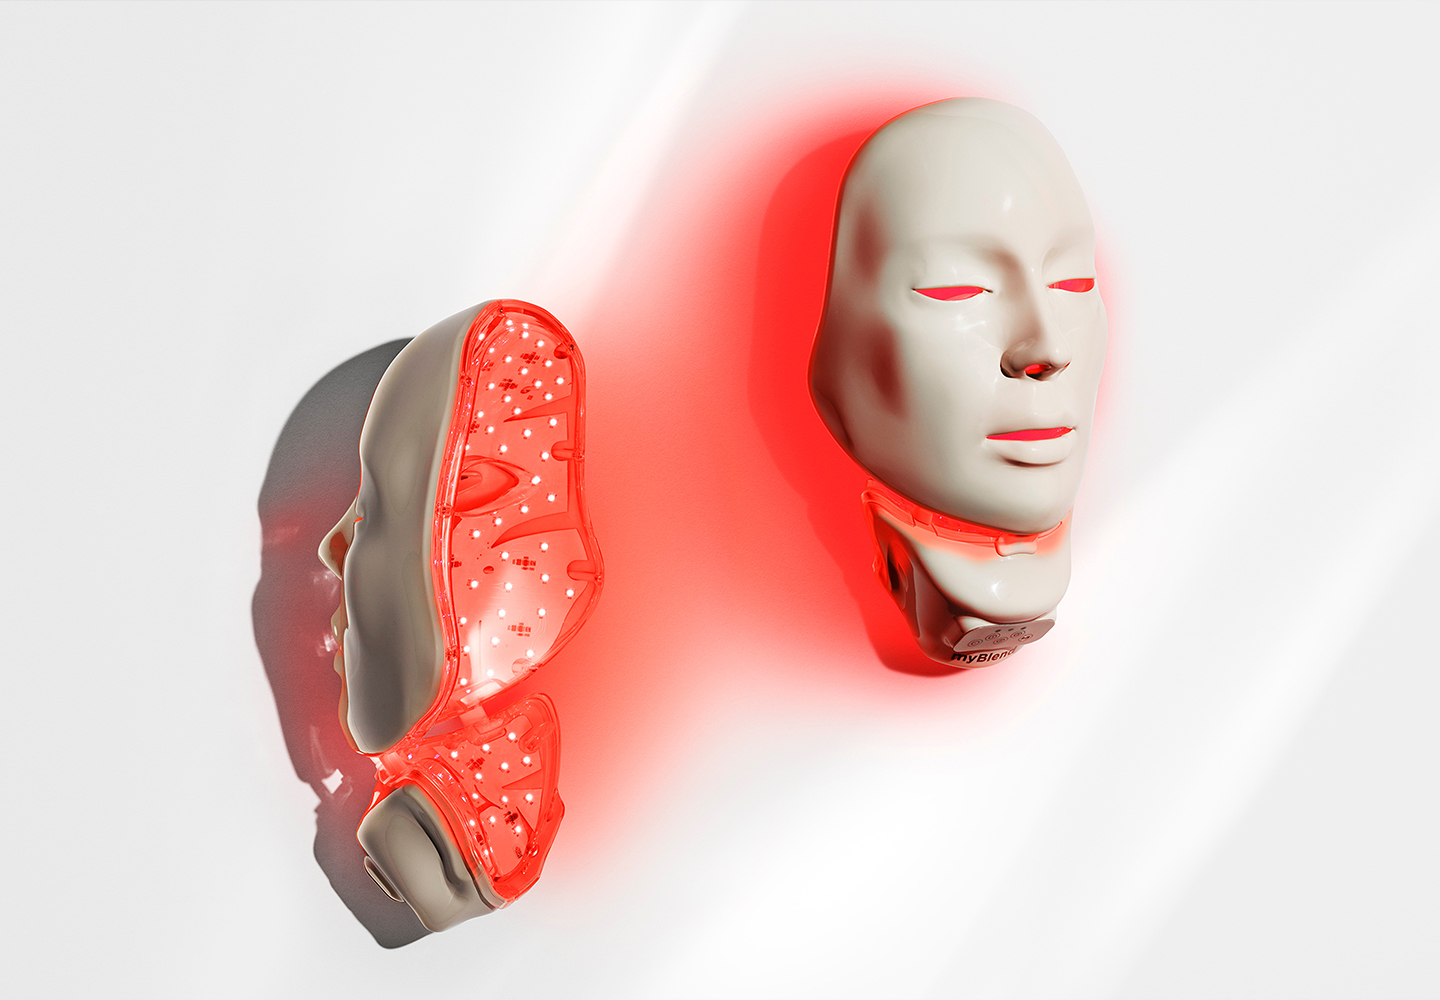 MyLed Mask, l'expérience ultime de la beauté cosmétique rendue possible grâce au pouvoir de la lumière avec le masque LED pour le visage.